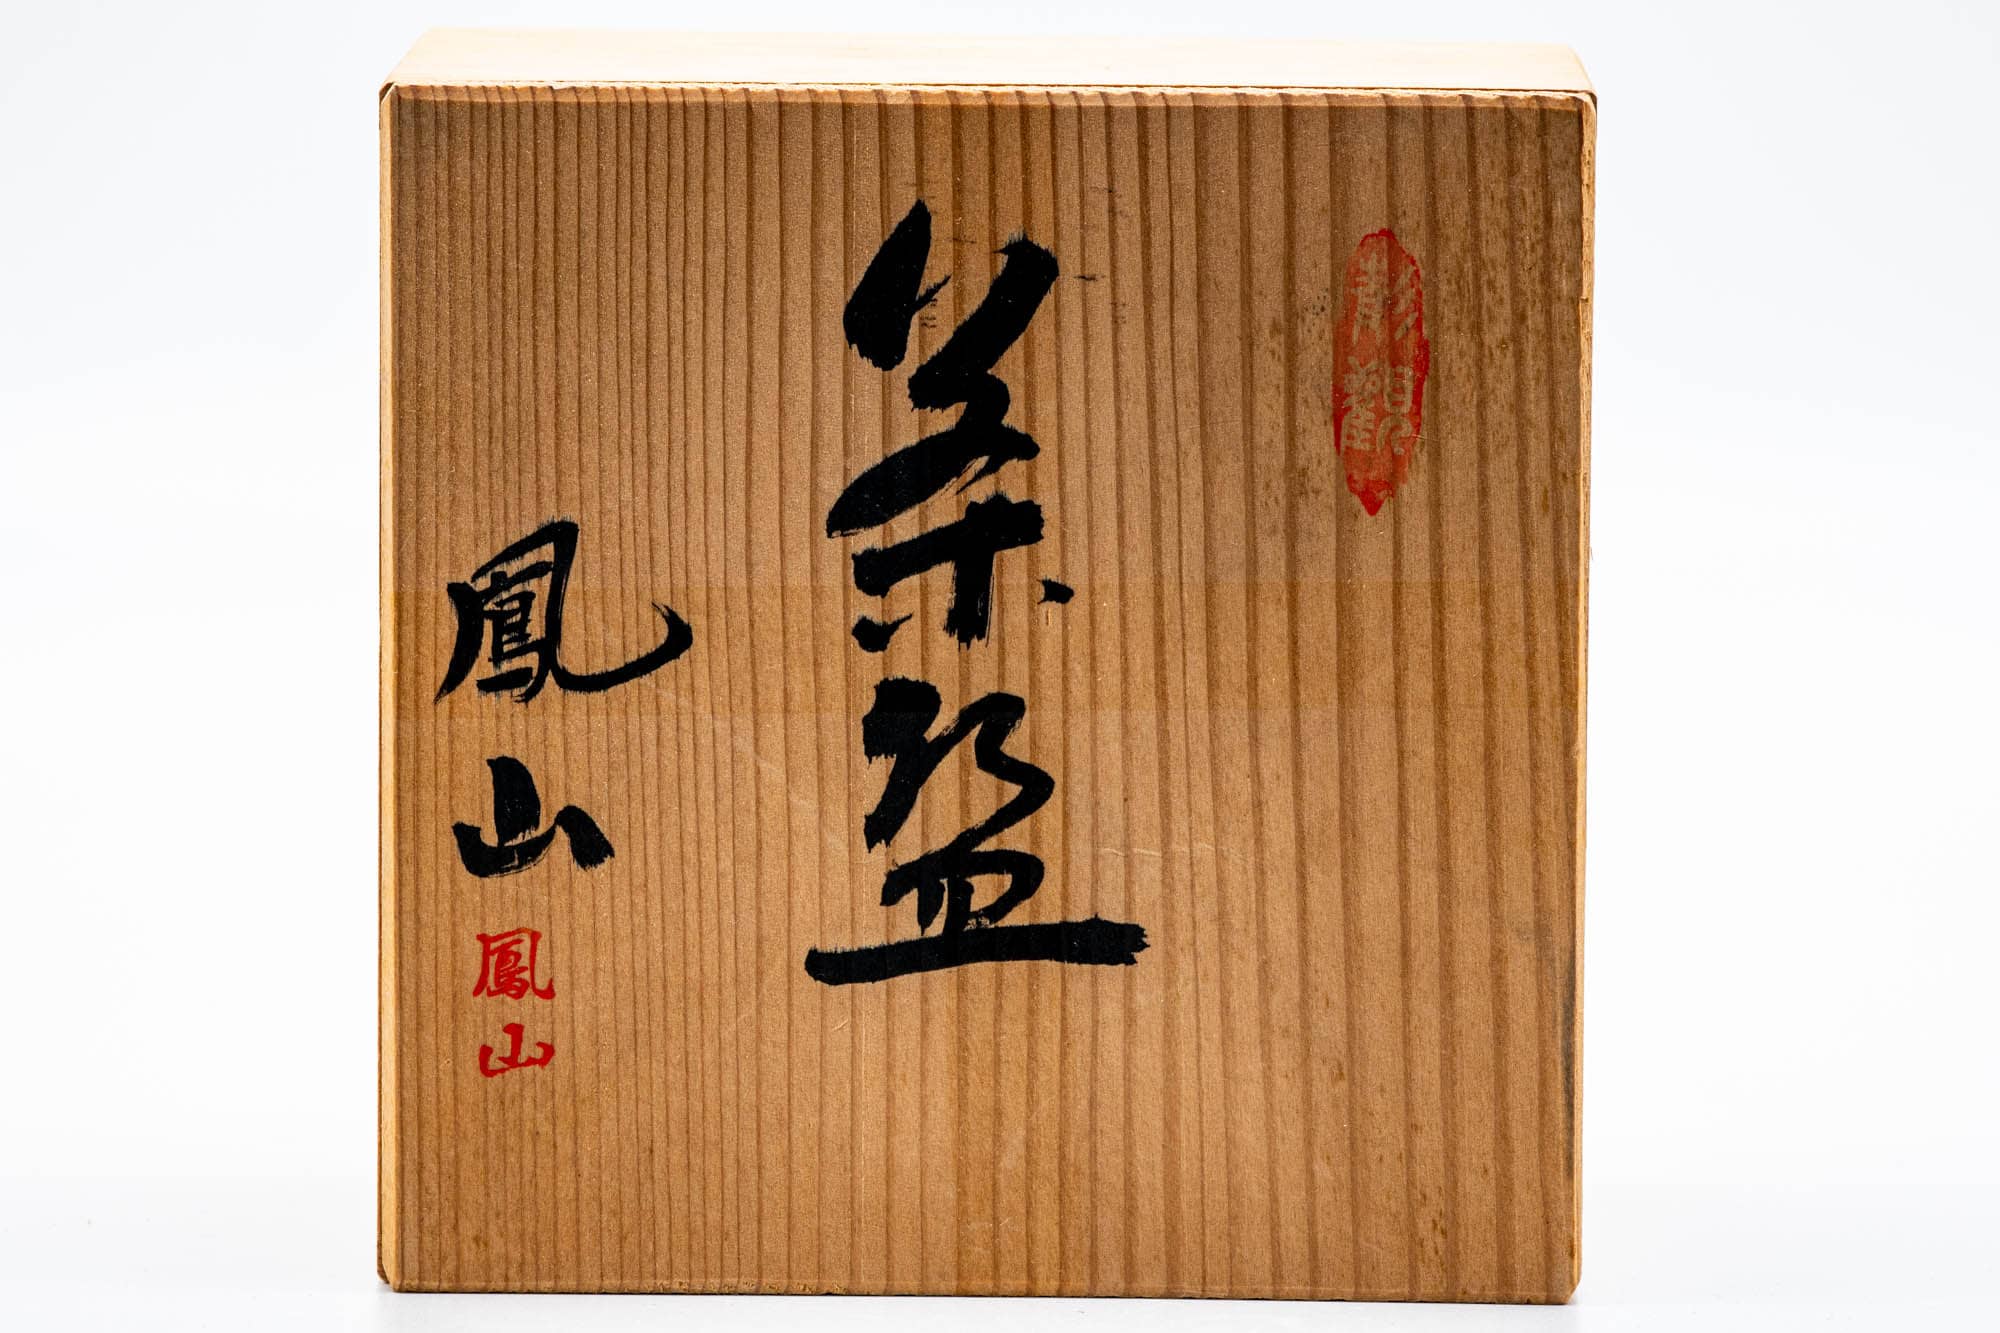 Japanese Matcha Bowl - 風山 - Red Oil Spot Glazed Kutsu-gata Chawan - 200ml